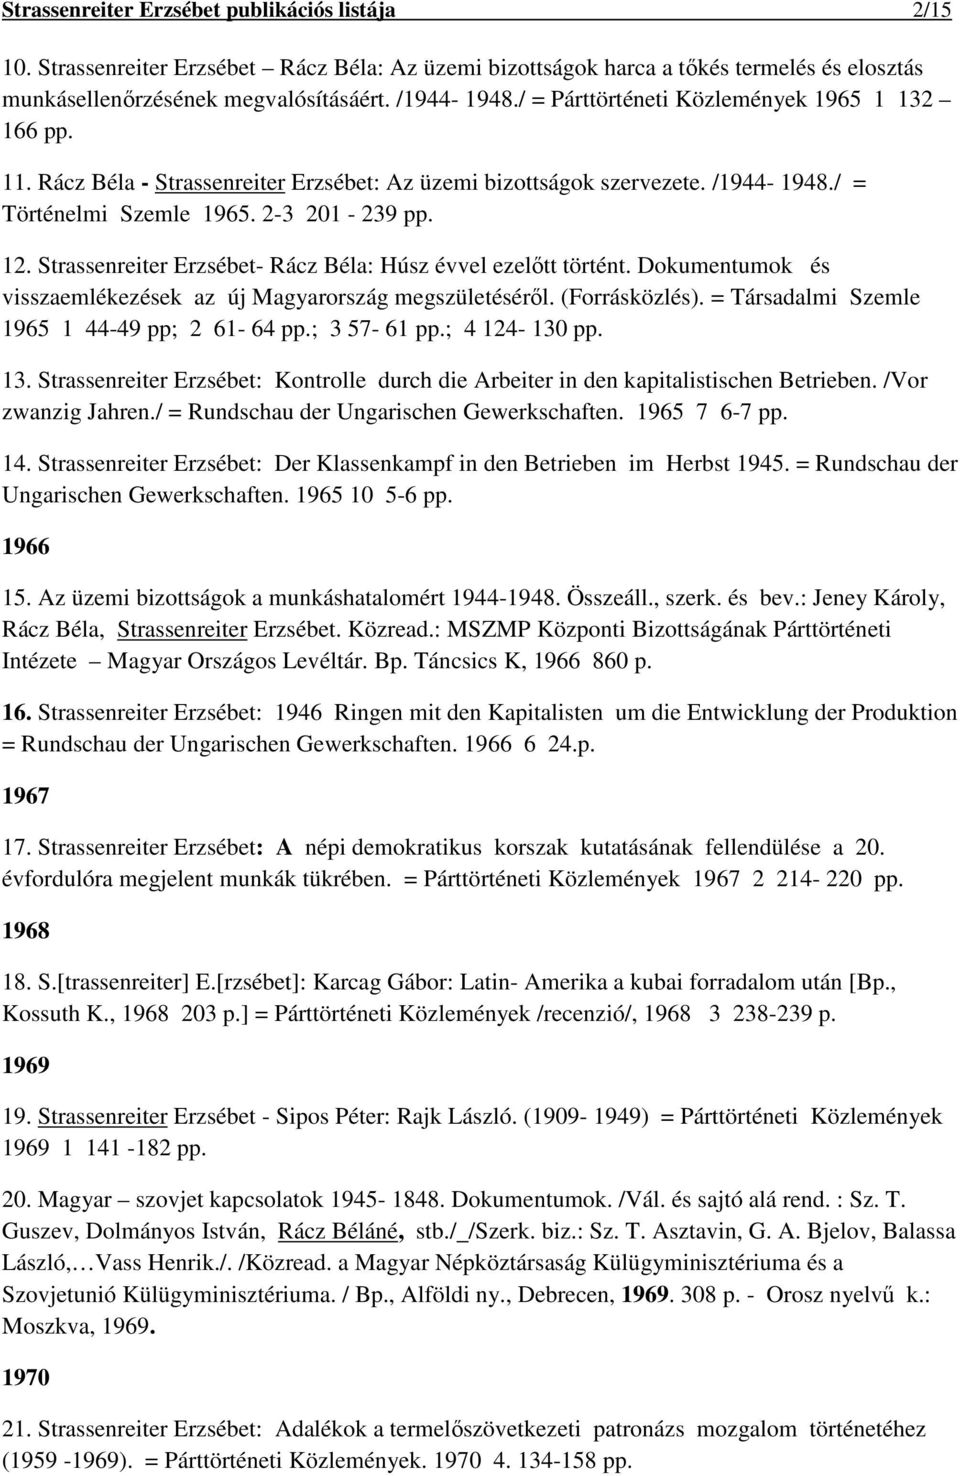 Strassenreiter Erzsébet. publikációs listája - PDF Ingyenes letöltés